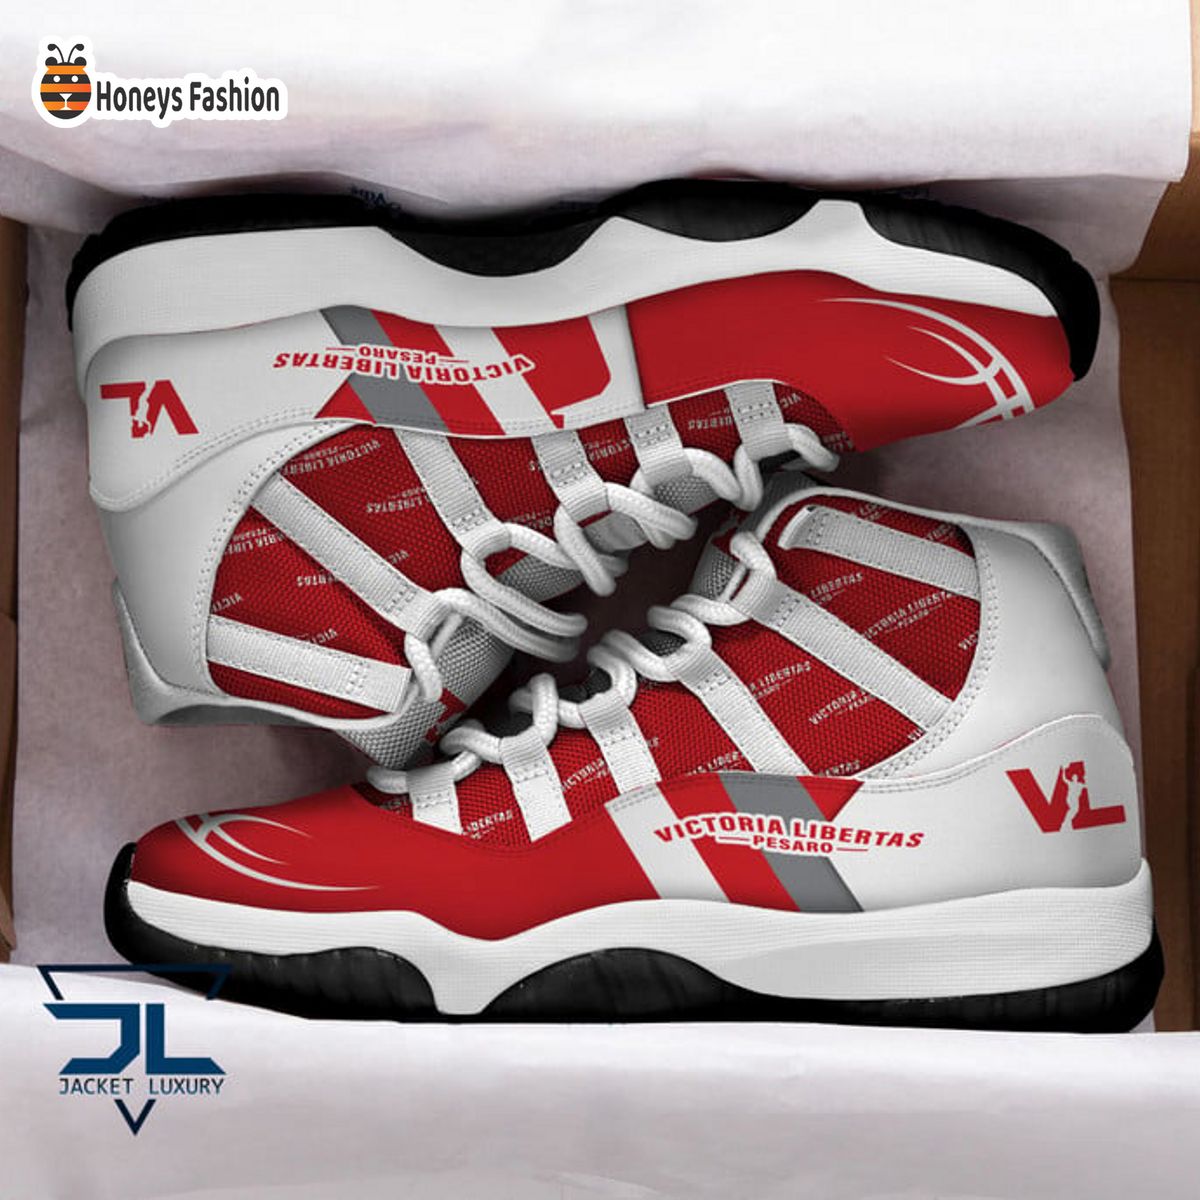 Victoria Libertas Pesaro Basket Air Jordan 11 Sneaker